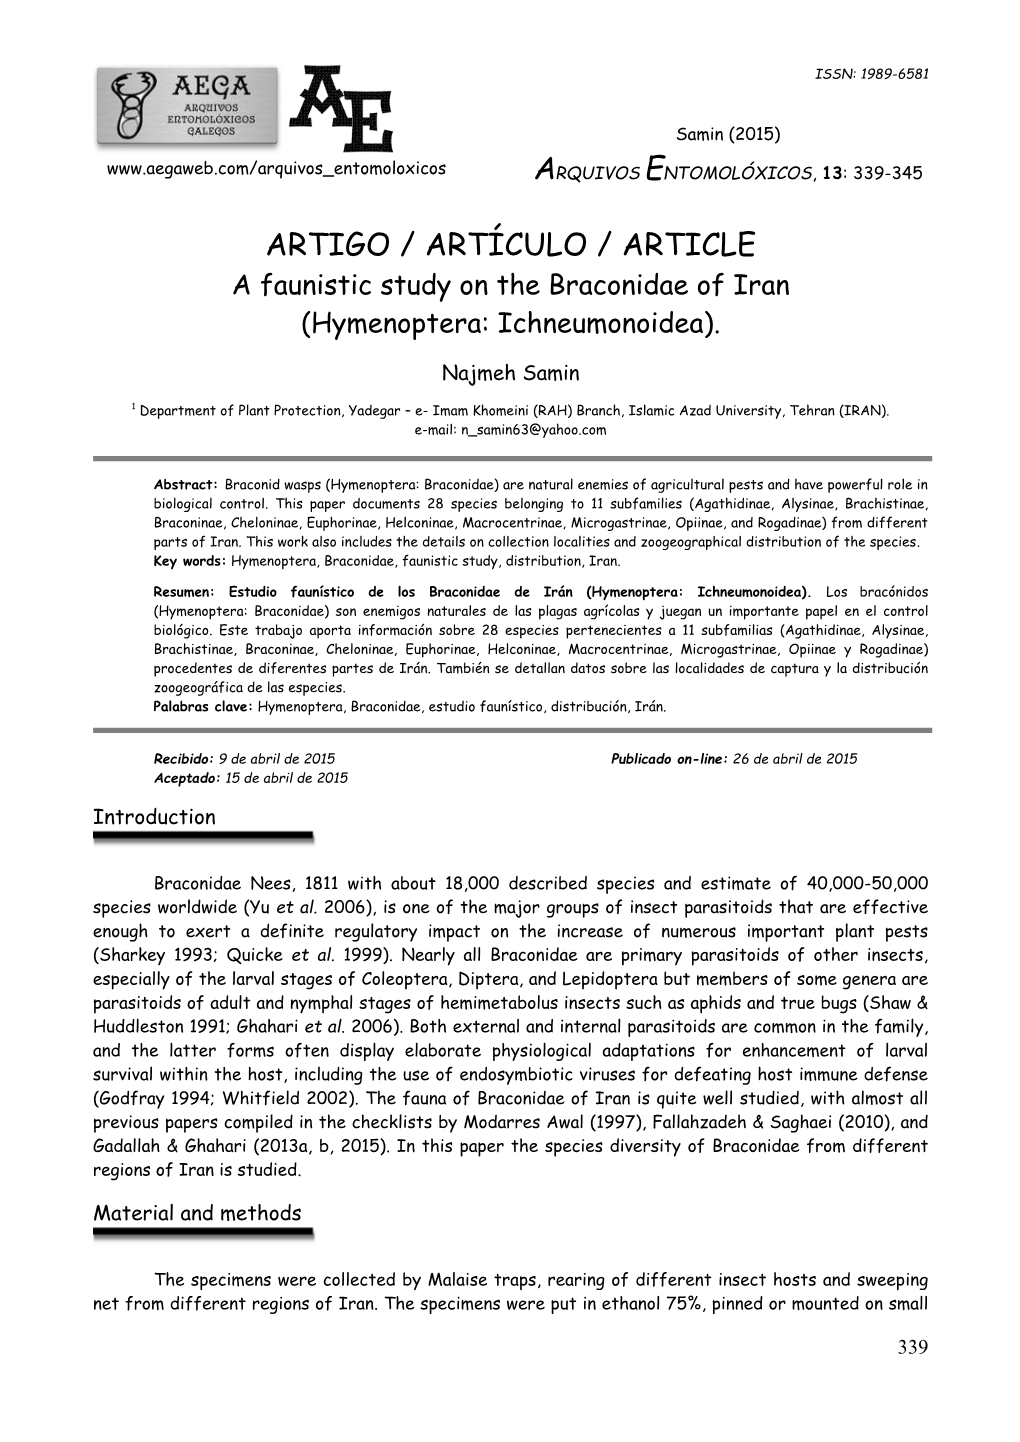 ARTIGO / ARTÍCULO / ARTICLE a Faunistic Study on the Braconidae of Iran (Hymenoptera: Ichneumonoidea)